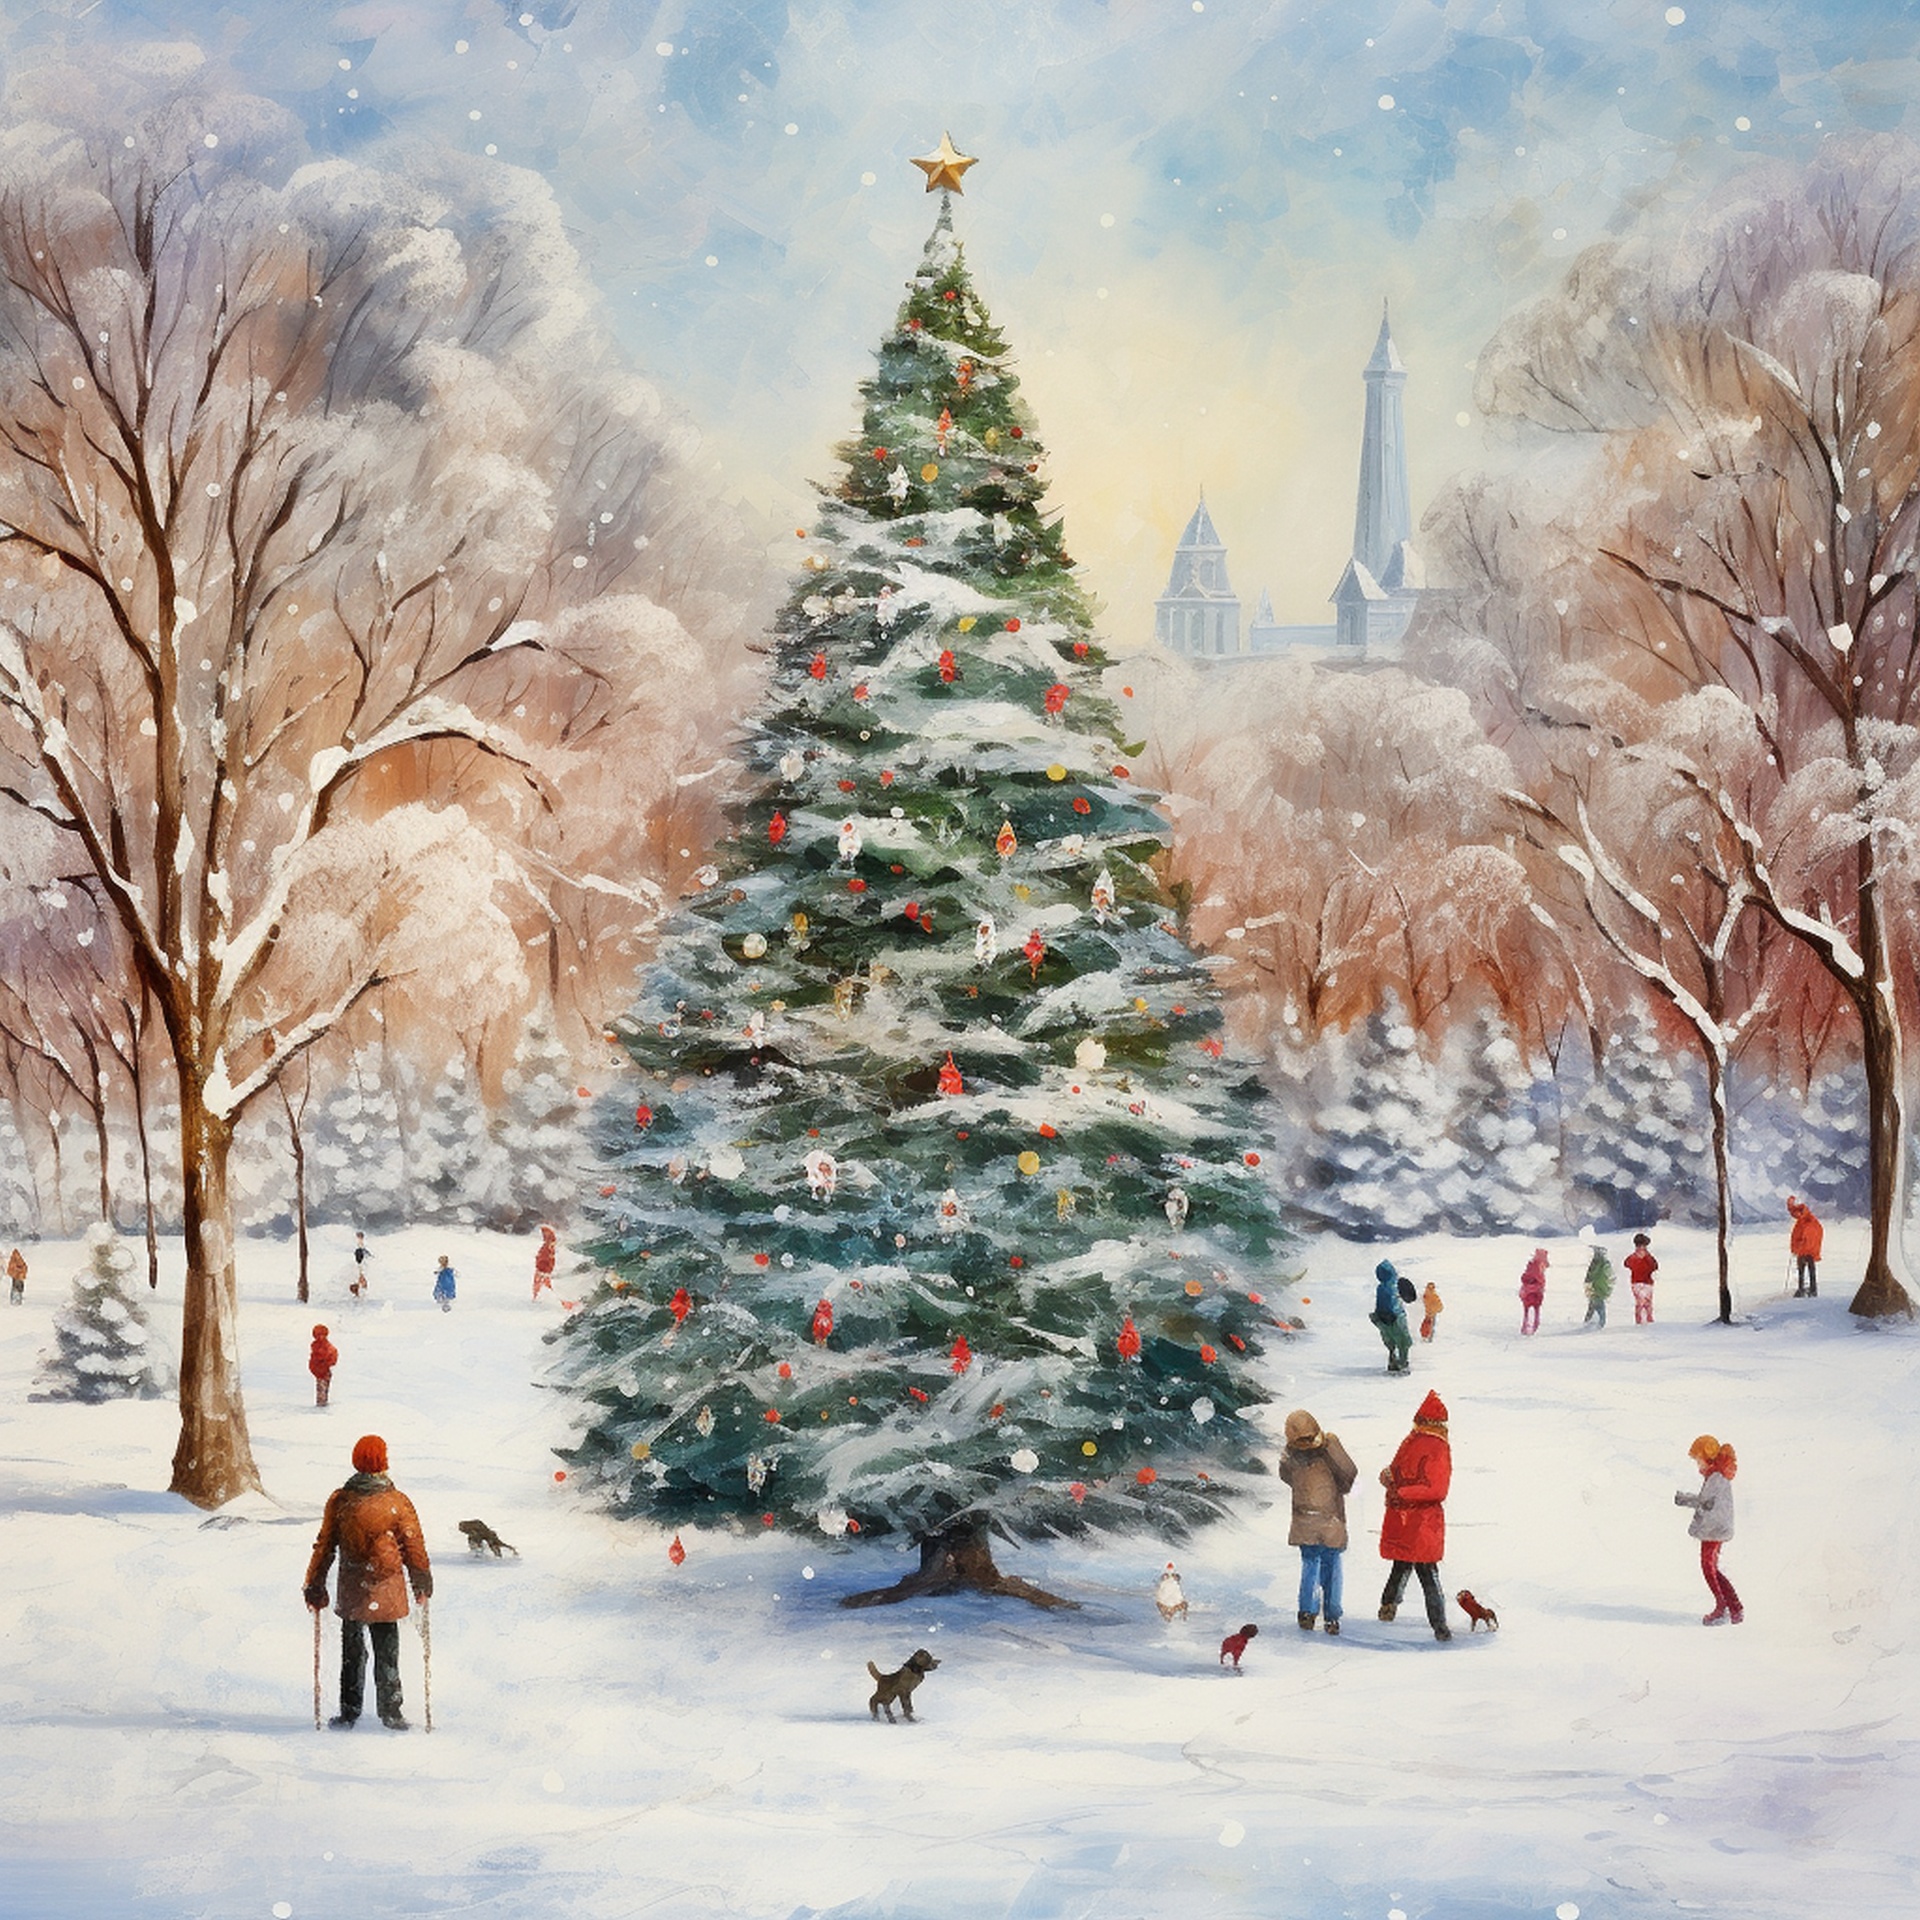 Christmas Winter Park Landscape Art Free Stock Photo - Public Domain ...